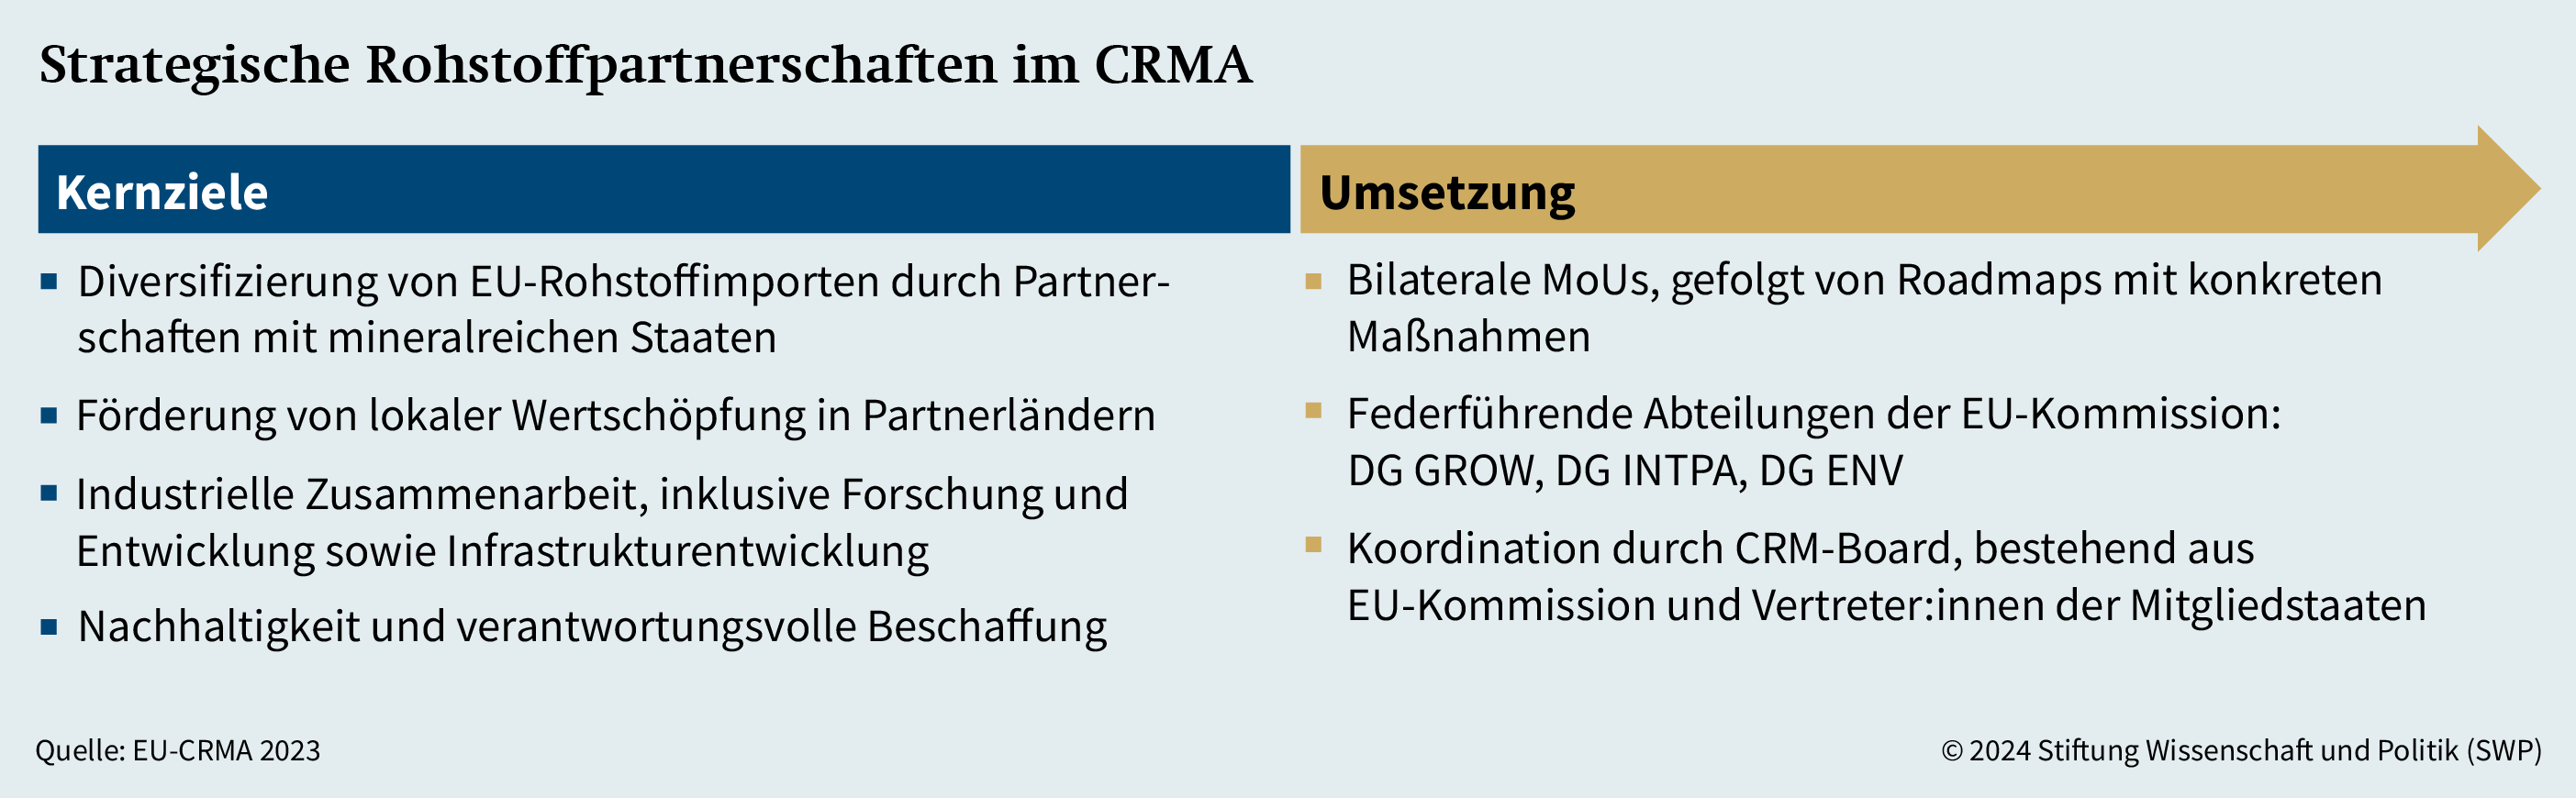 Grafik 2: Strategische Rohstoffpartnerschaften im CRMA